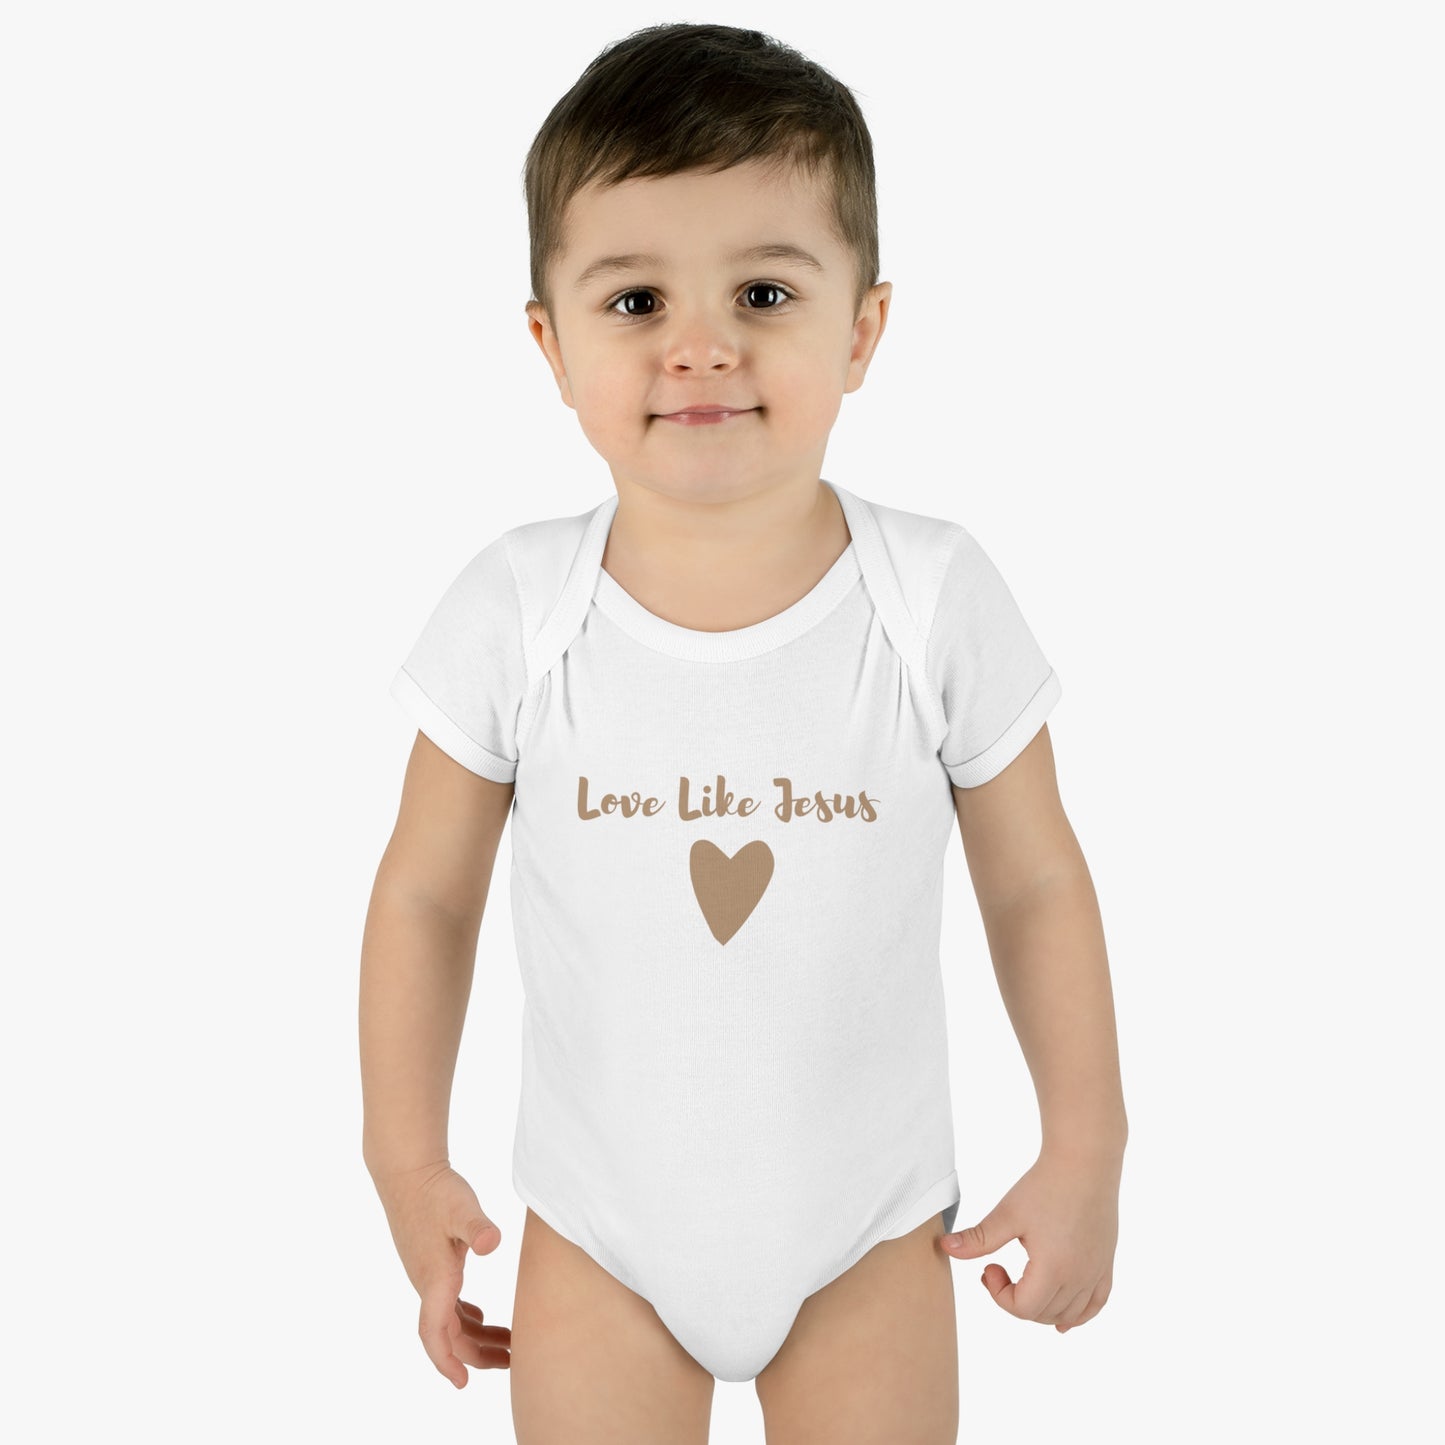 Love Like Jesus Heart Infant Body Suit